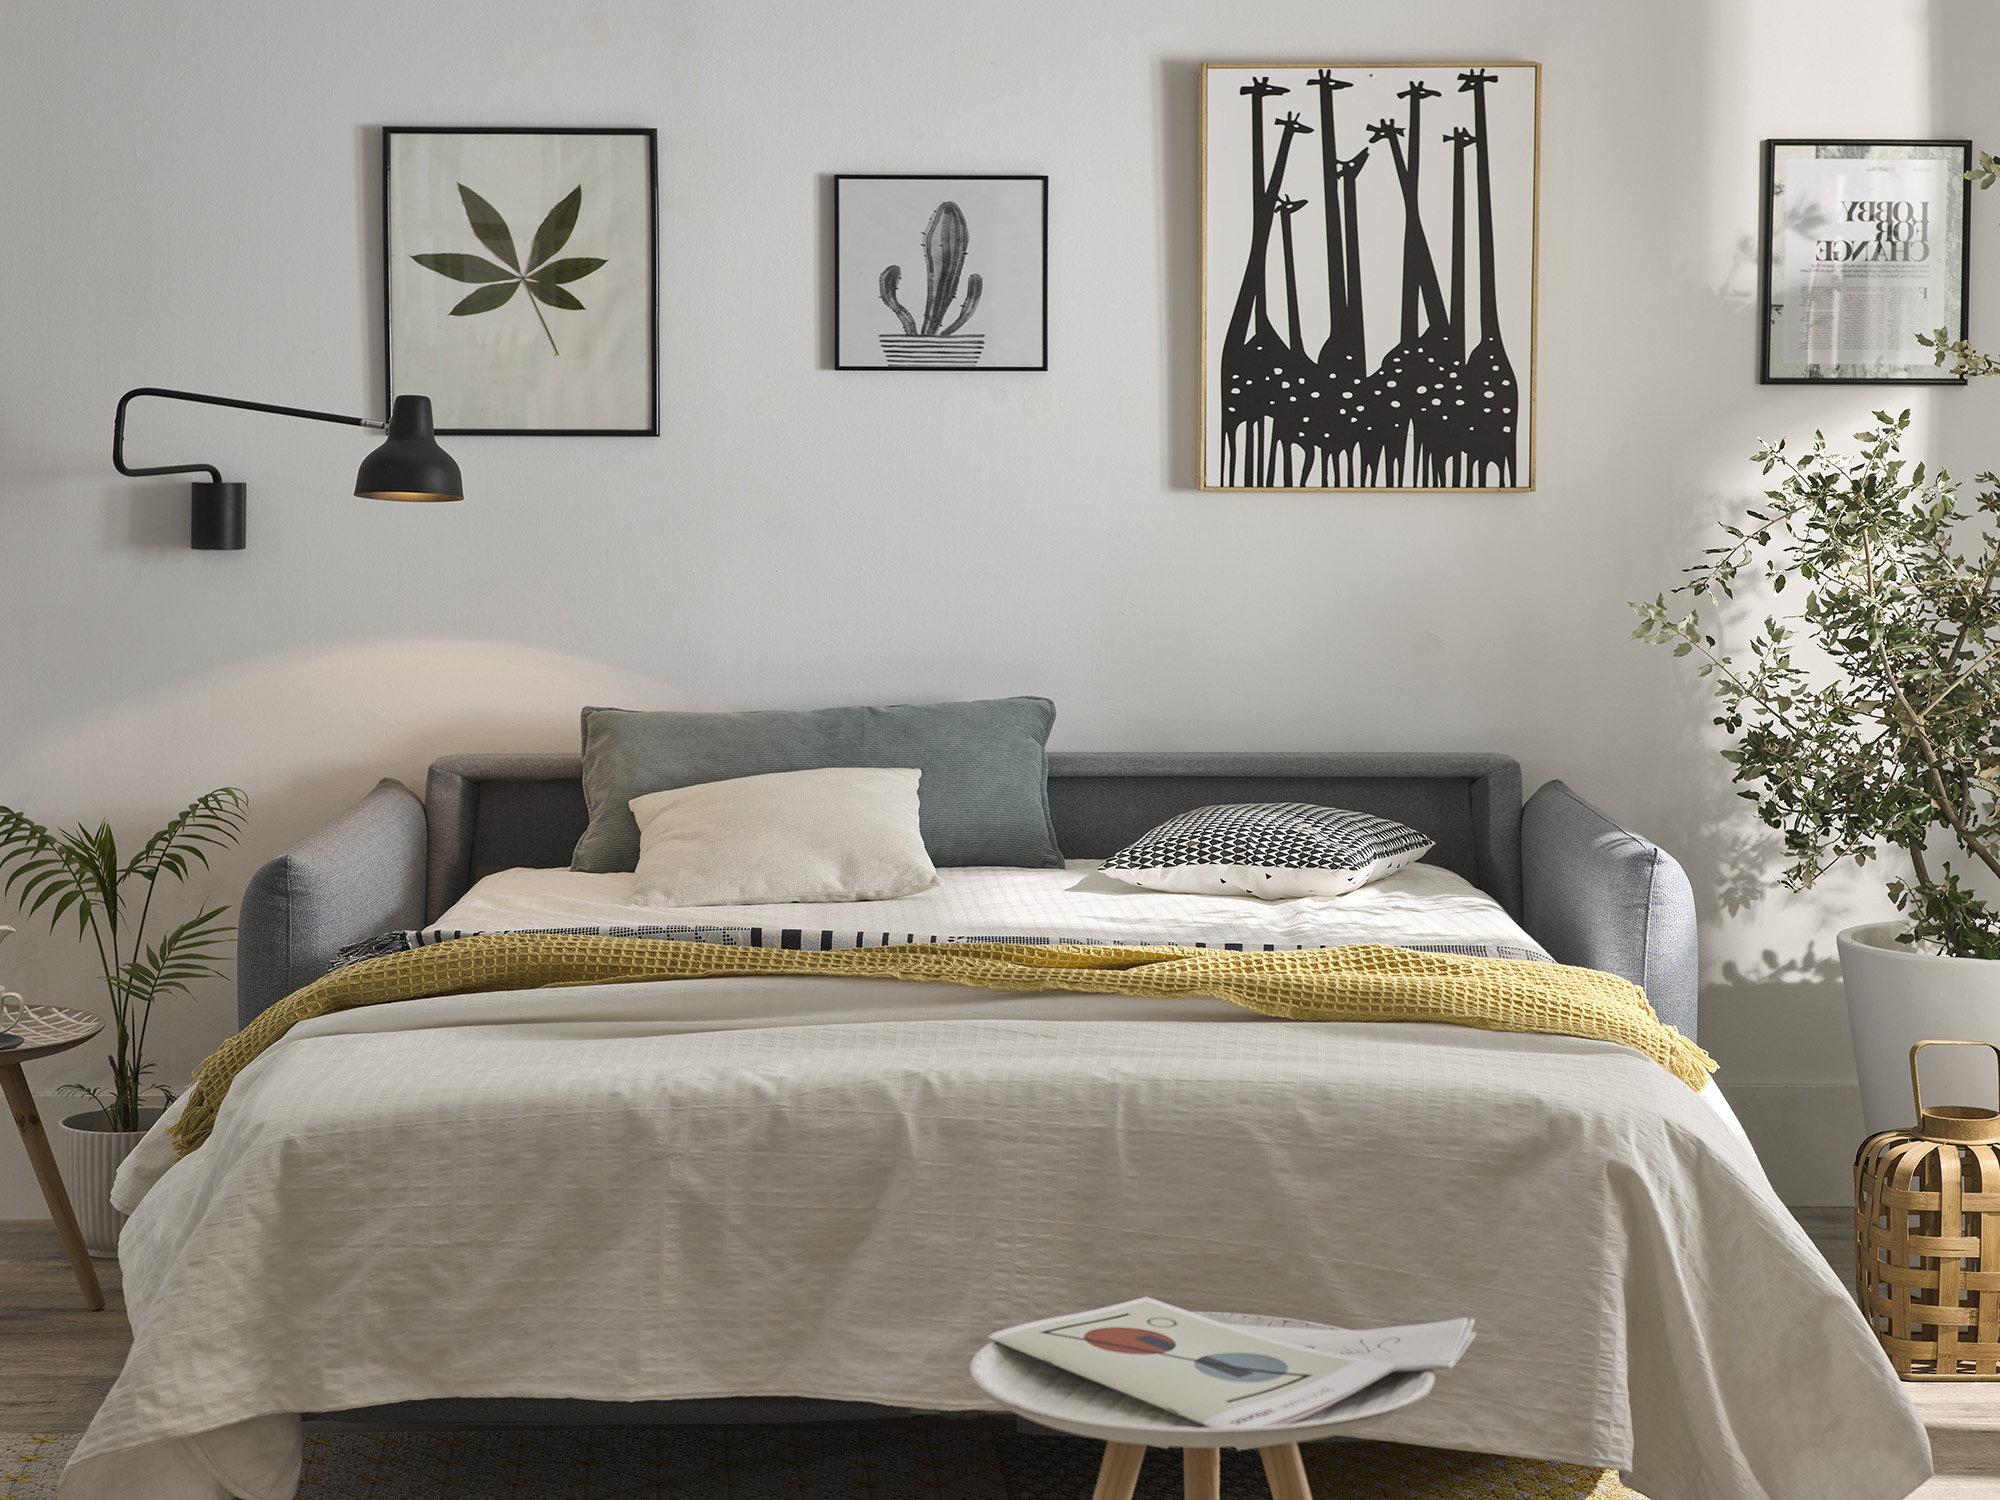 Te ayudamos elegir el sofá cama barato que mejor se adapta a tus necesidades, de estilo italiano, clic-clac o - SOFASS® Tienda Online